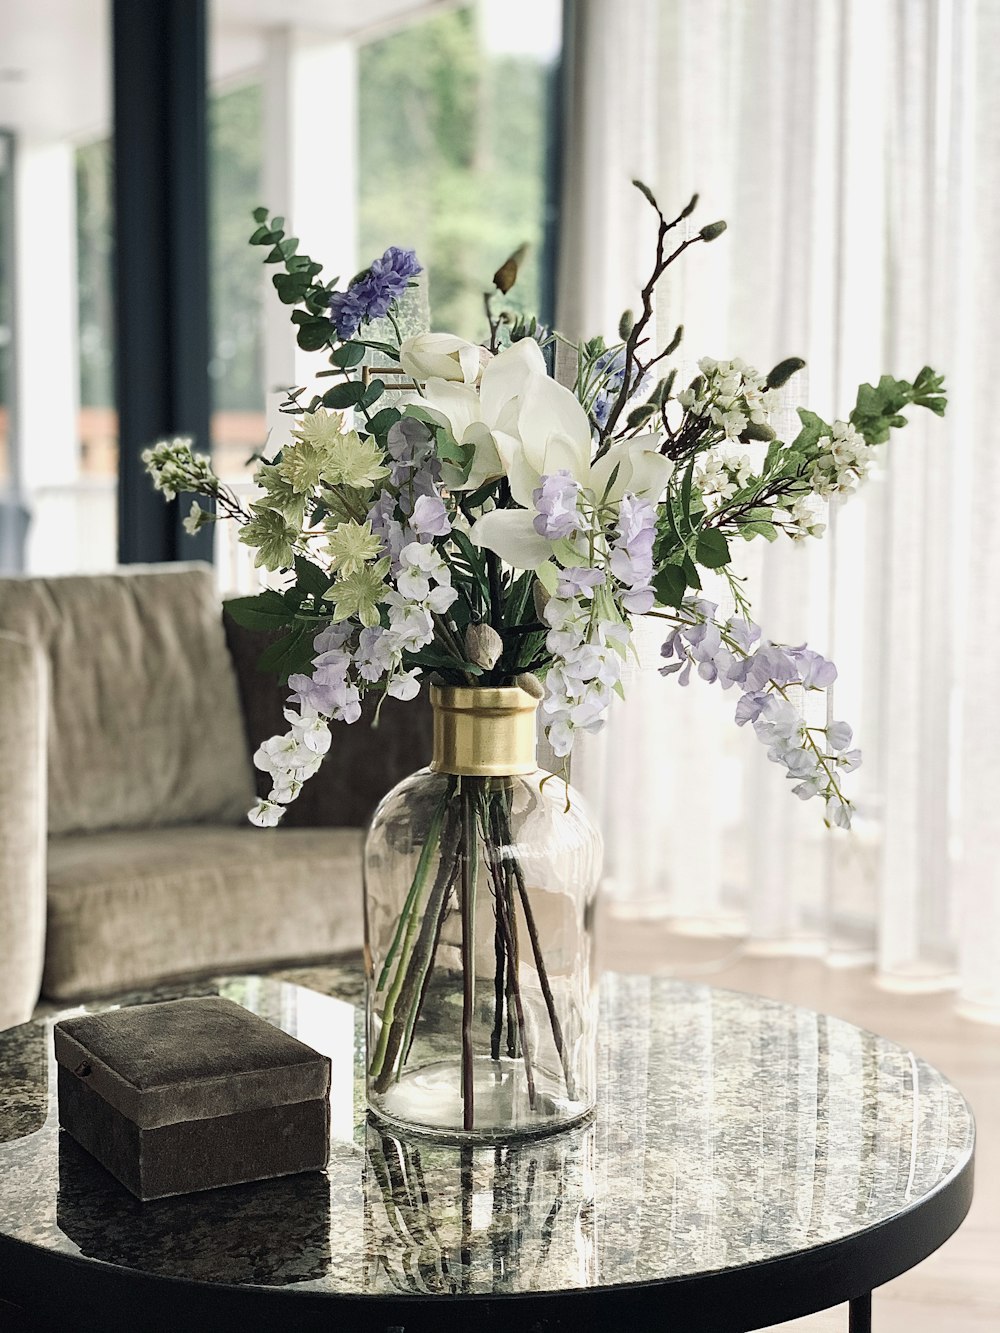 灰色のソファの上の透明なガラスの花瓶に紫色の花